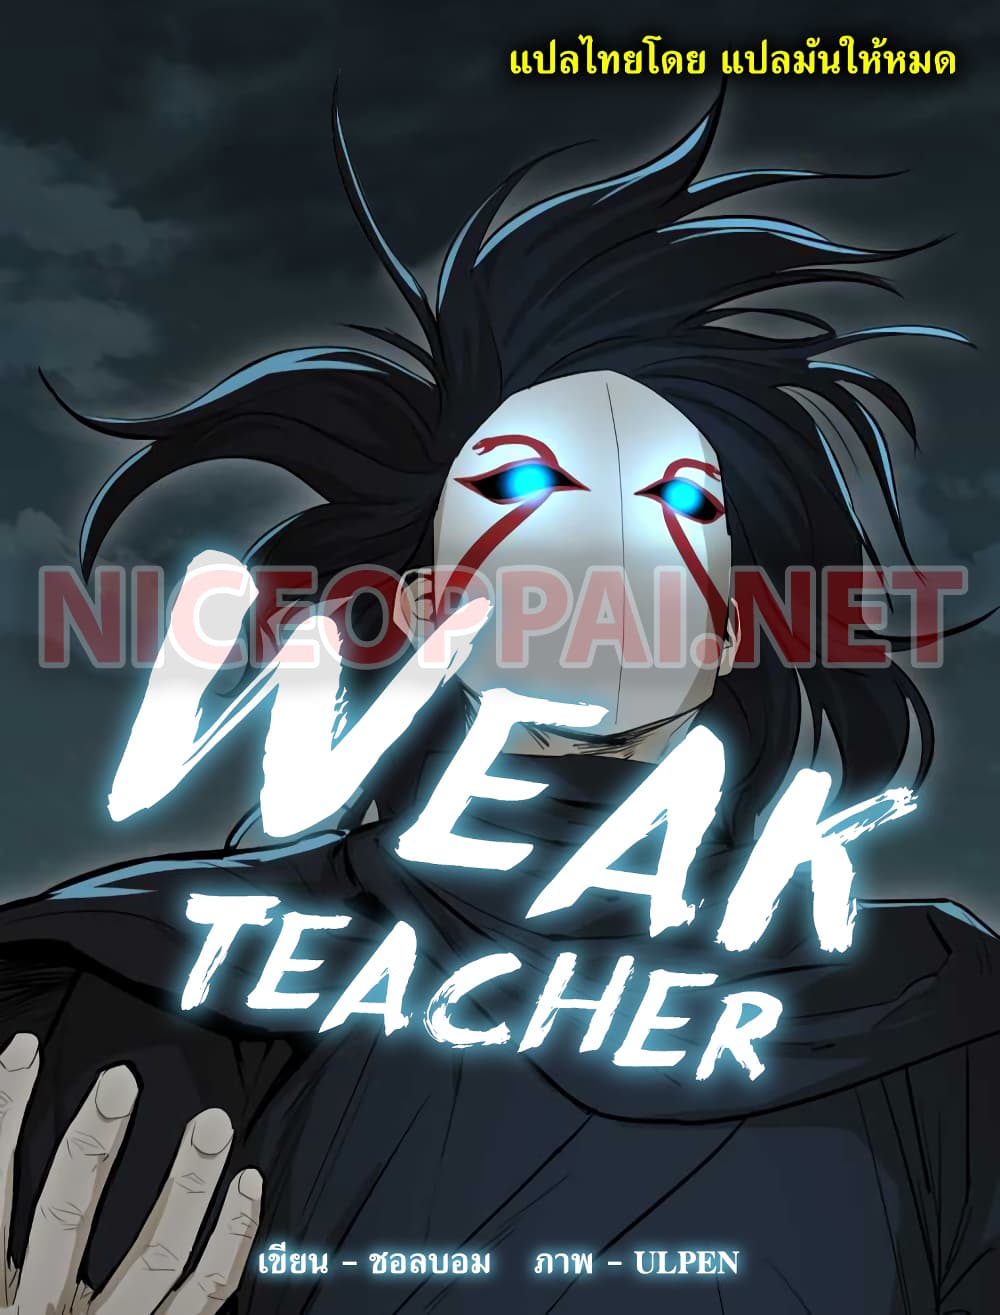 Weak Teacher 19-19